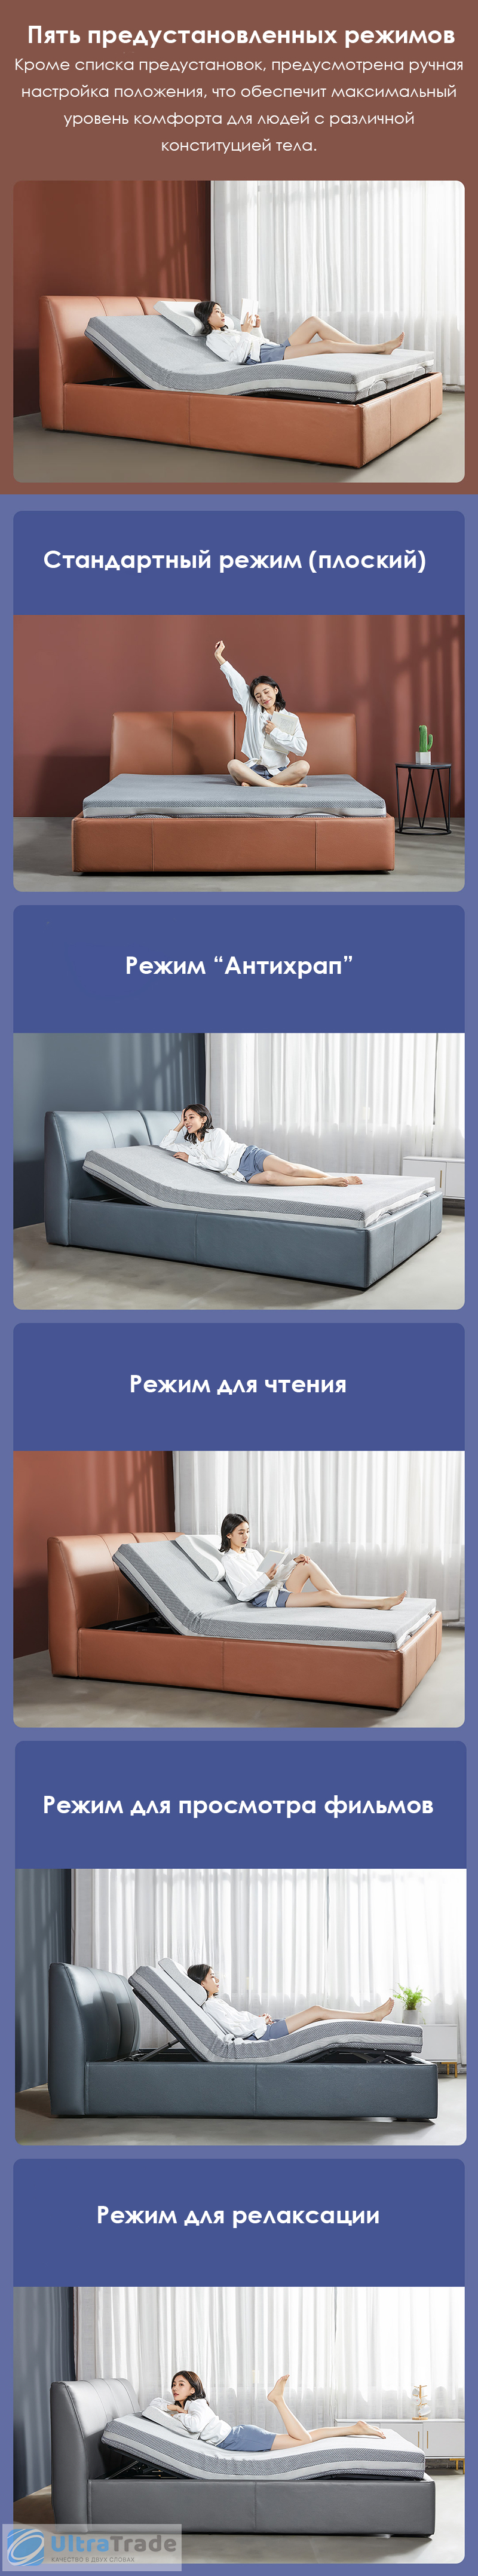 Двуспальная кровать Xiaomi 8h Milan Smart Electric Bed RM 1.8 m Grey Blue (умное основание и латексный матрас Schcott)